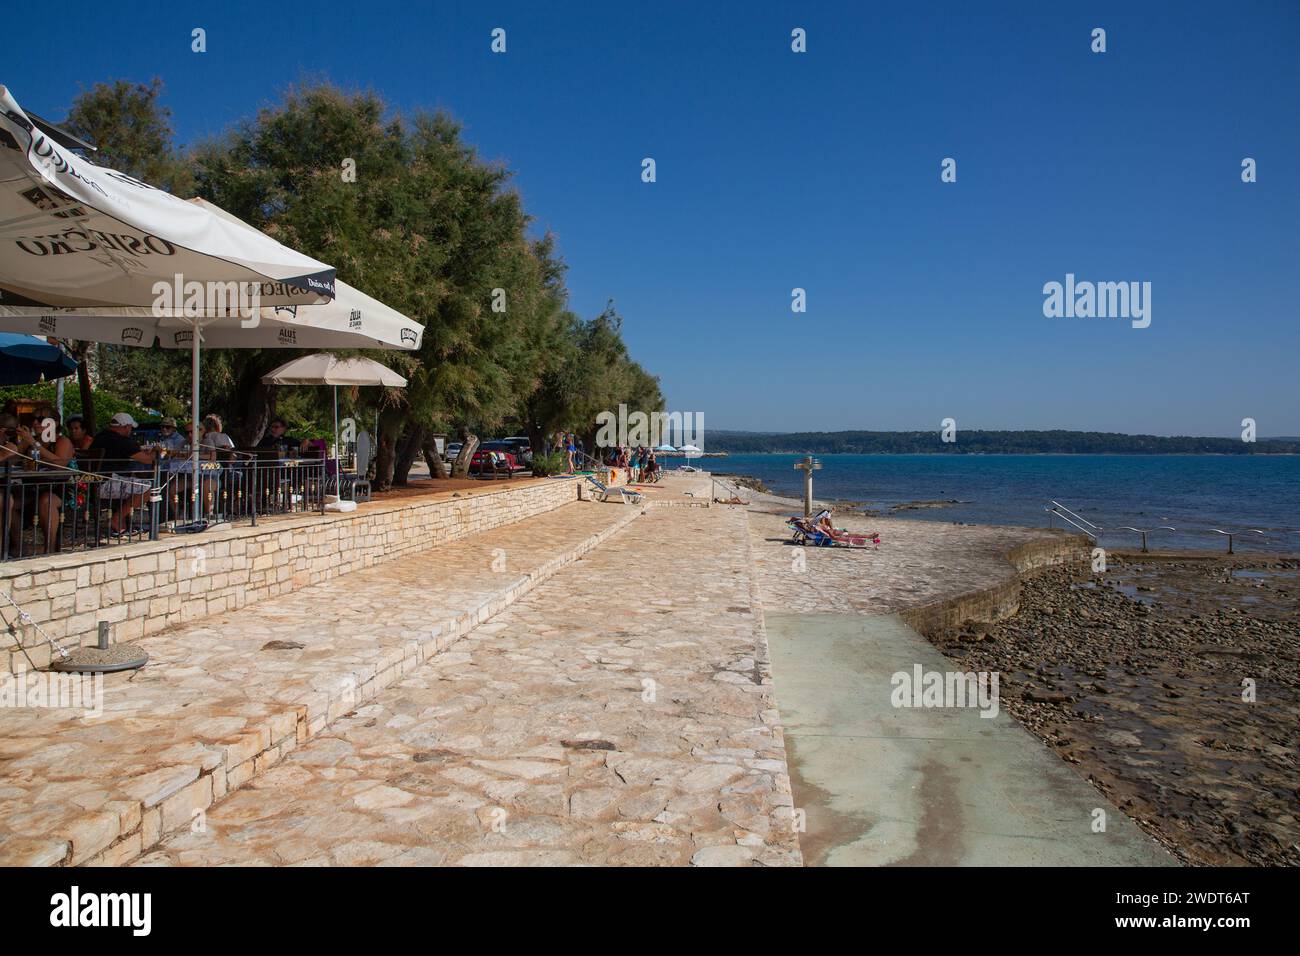 Seaside Restaurant and People, Altstadt, Novigrad, Kroatien, Europa Stockfoto